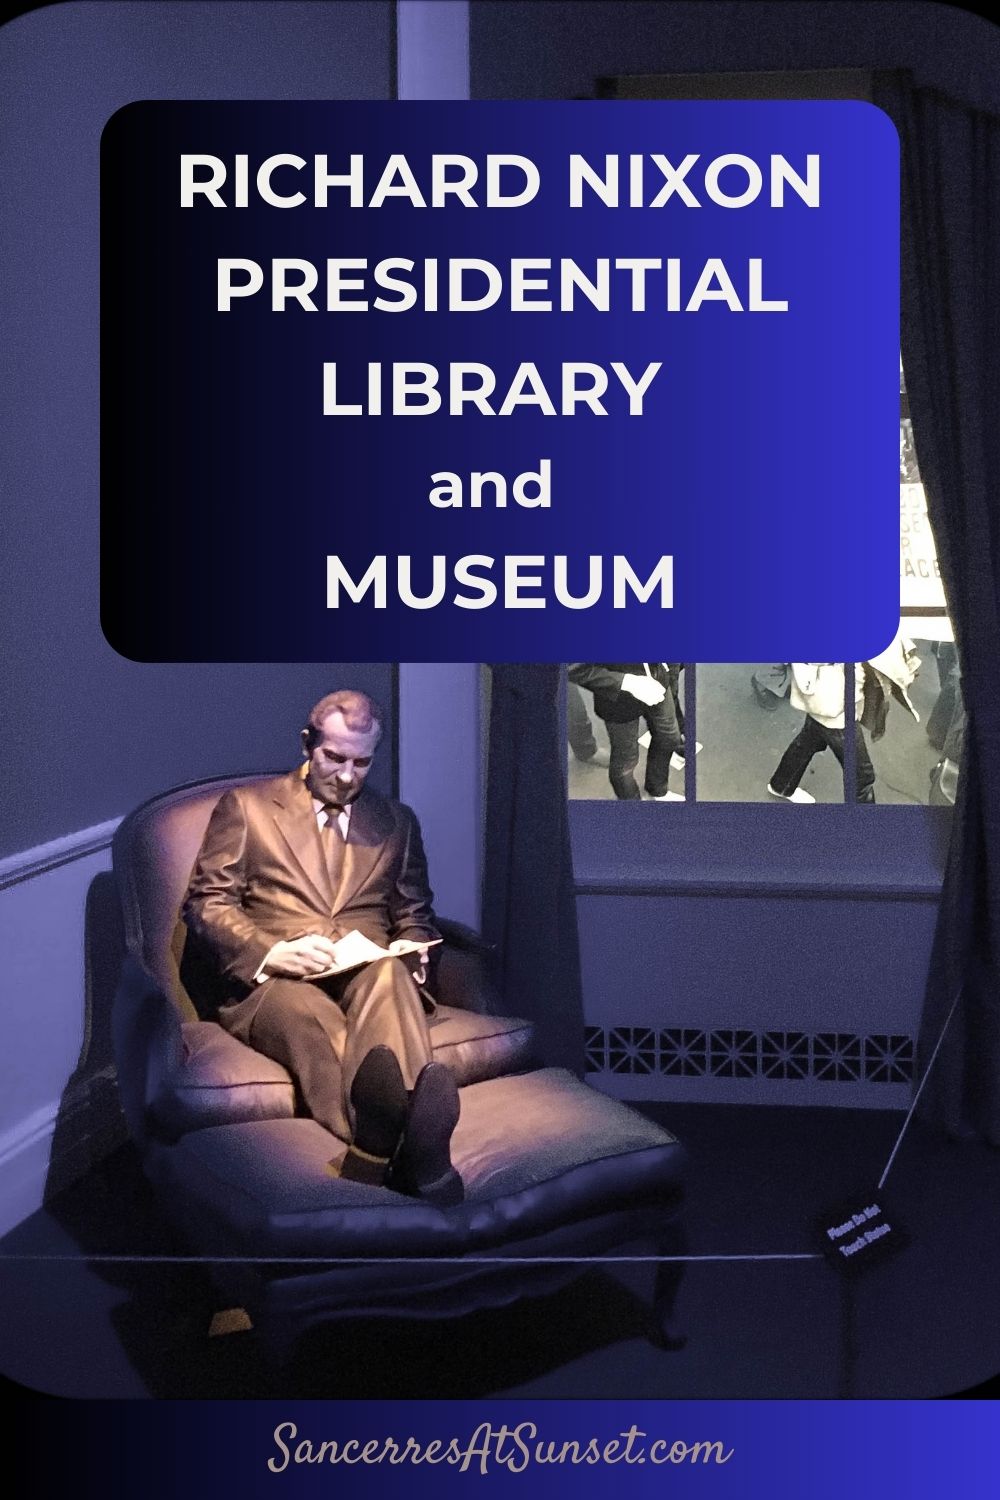 Richard Nixon Presidential Library and Museum in Yorba Linda, California